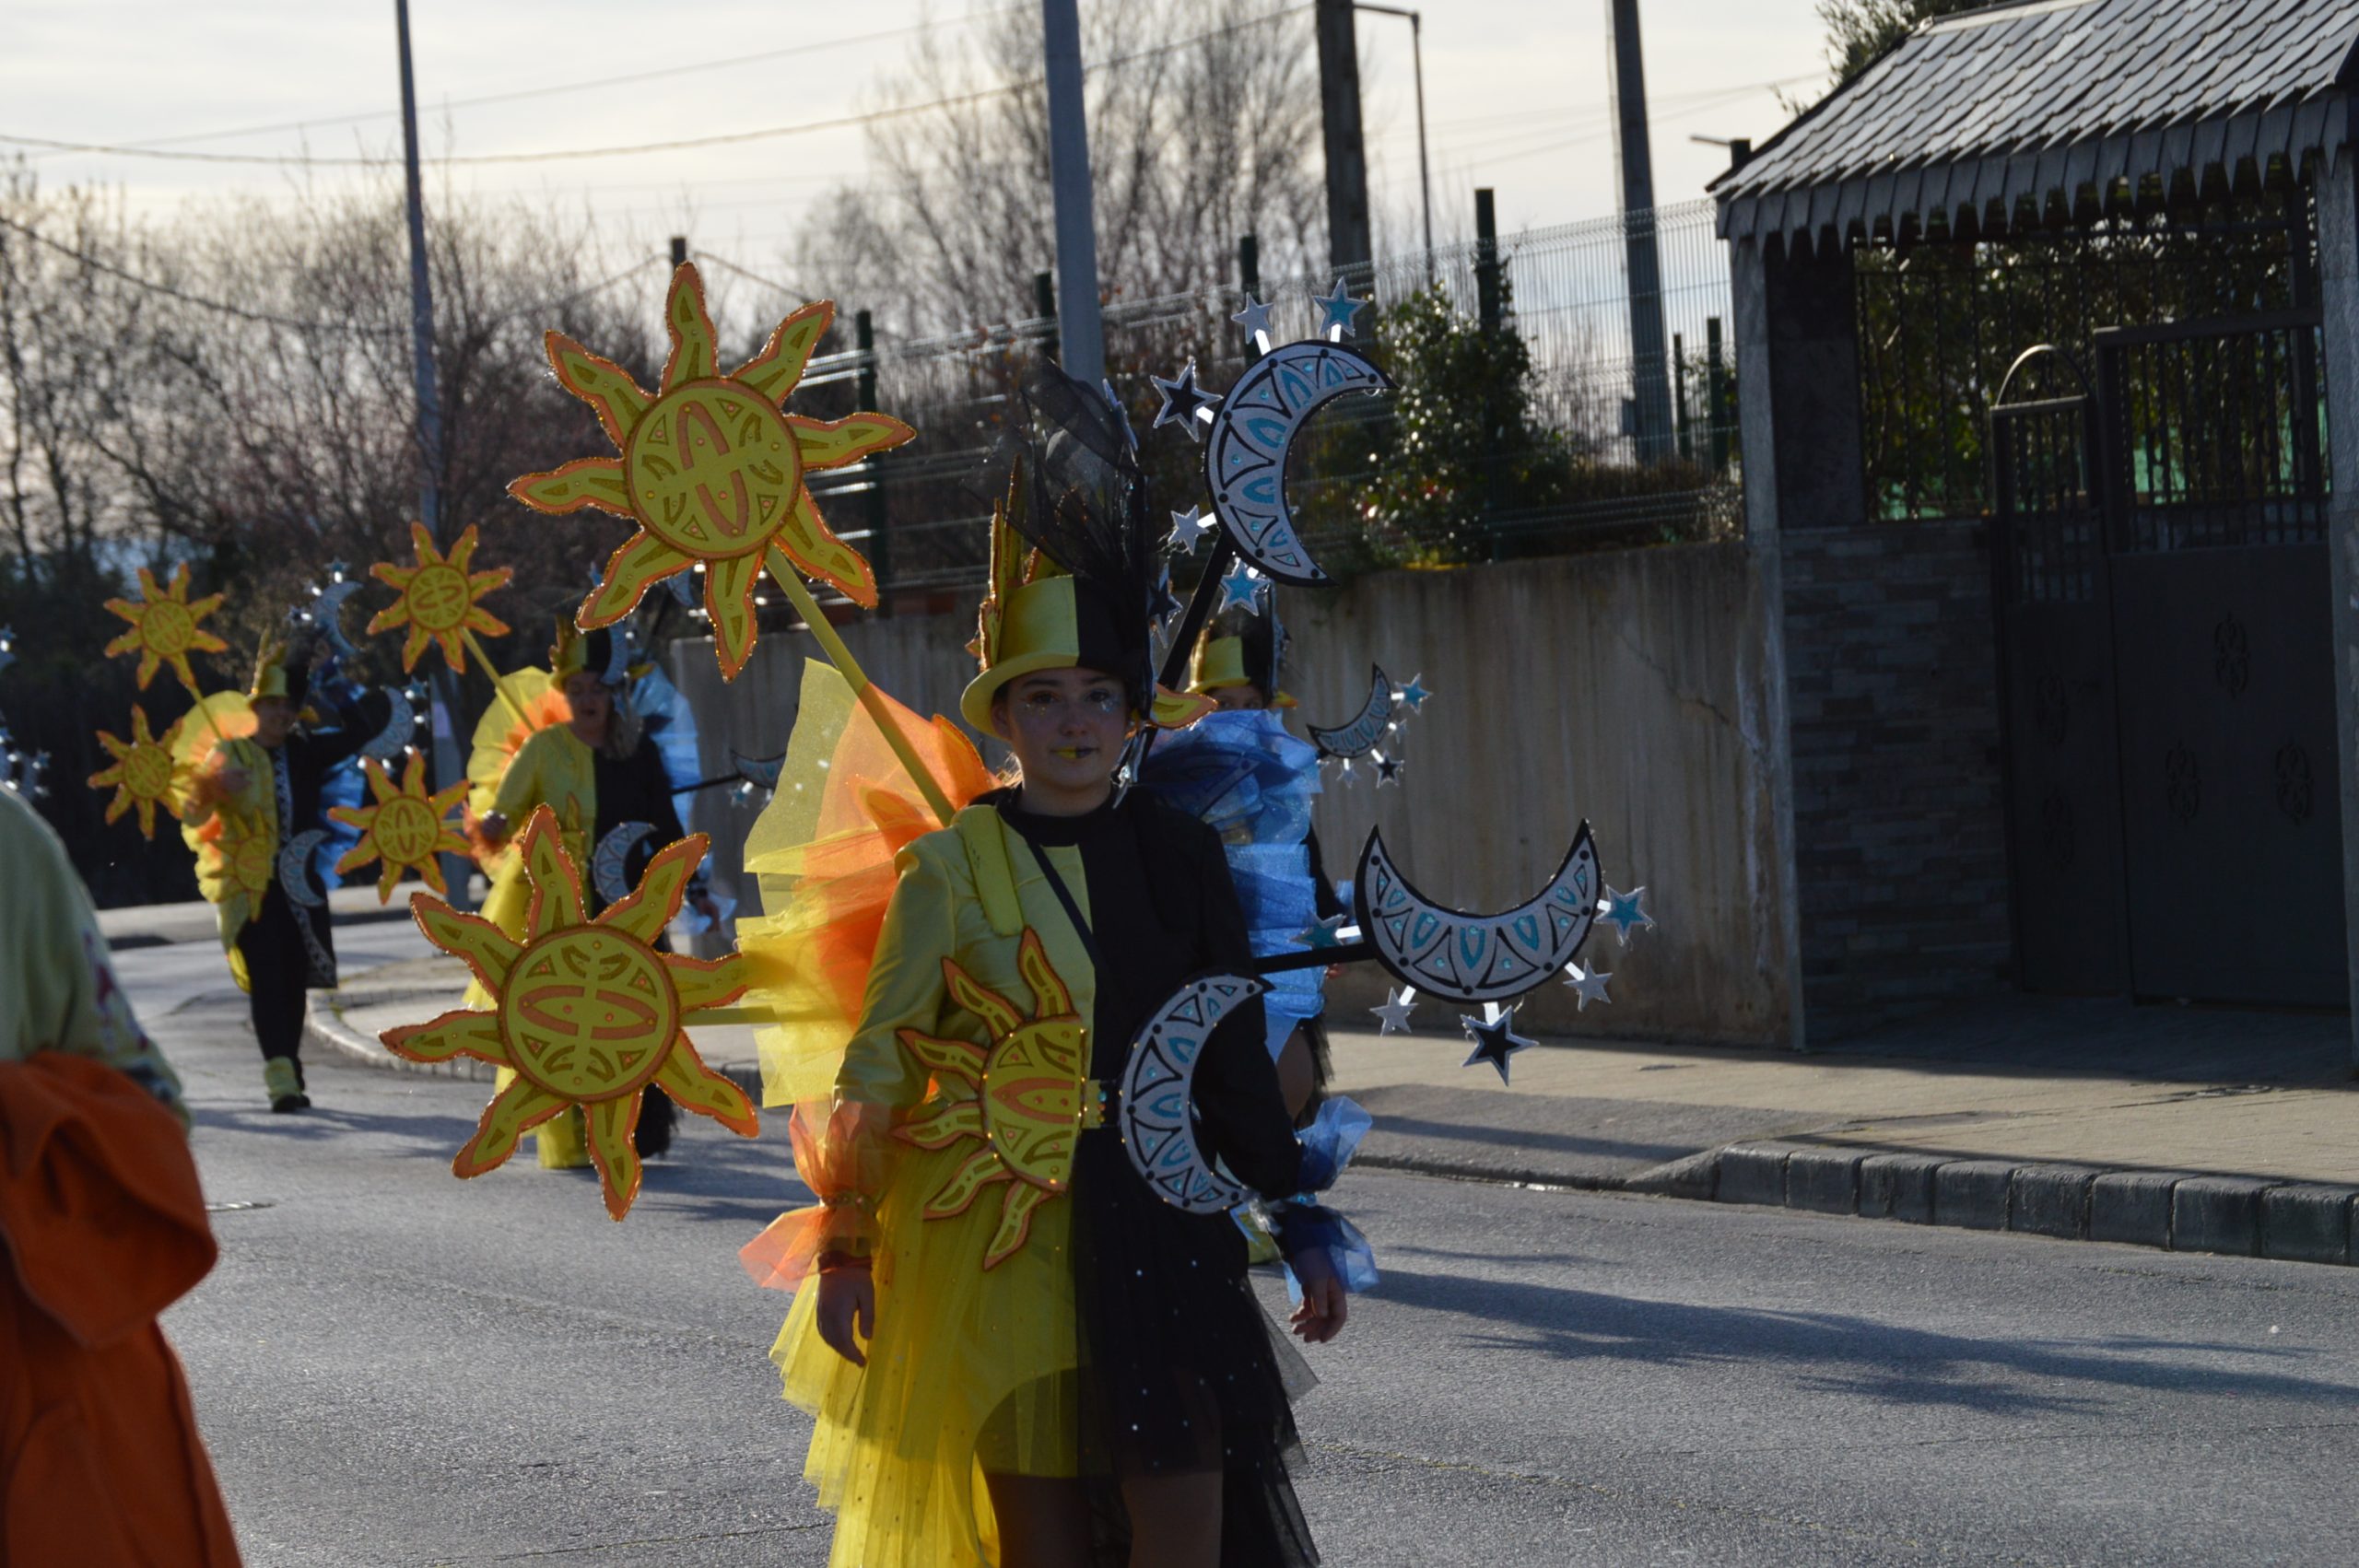 La alegría del Carnaval recorre Cubillos del Sil bajo un sol casi-primaveral 66